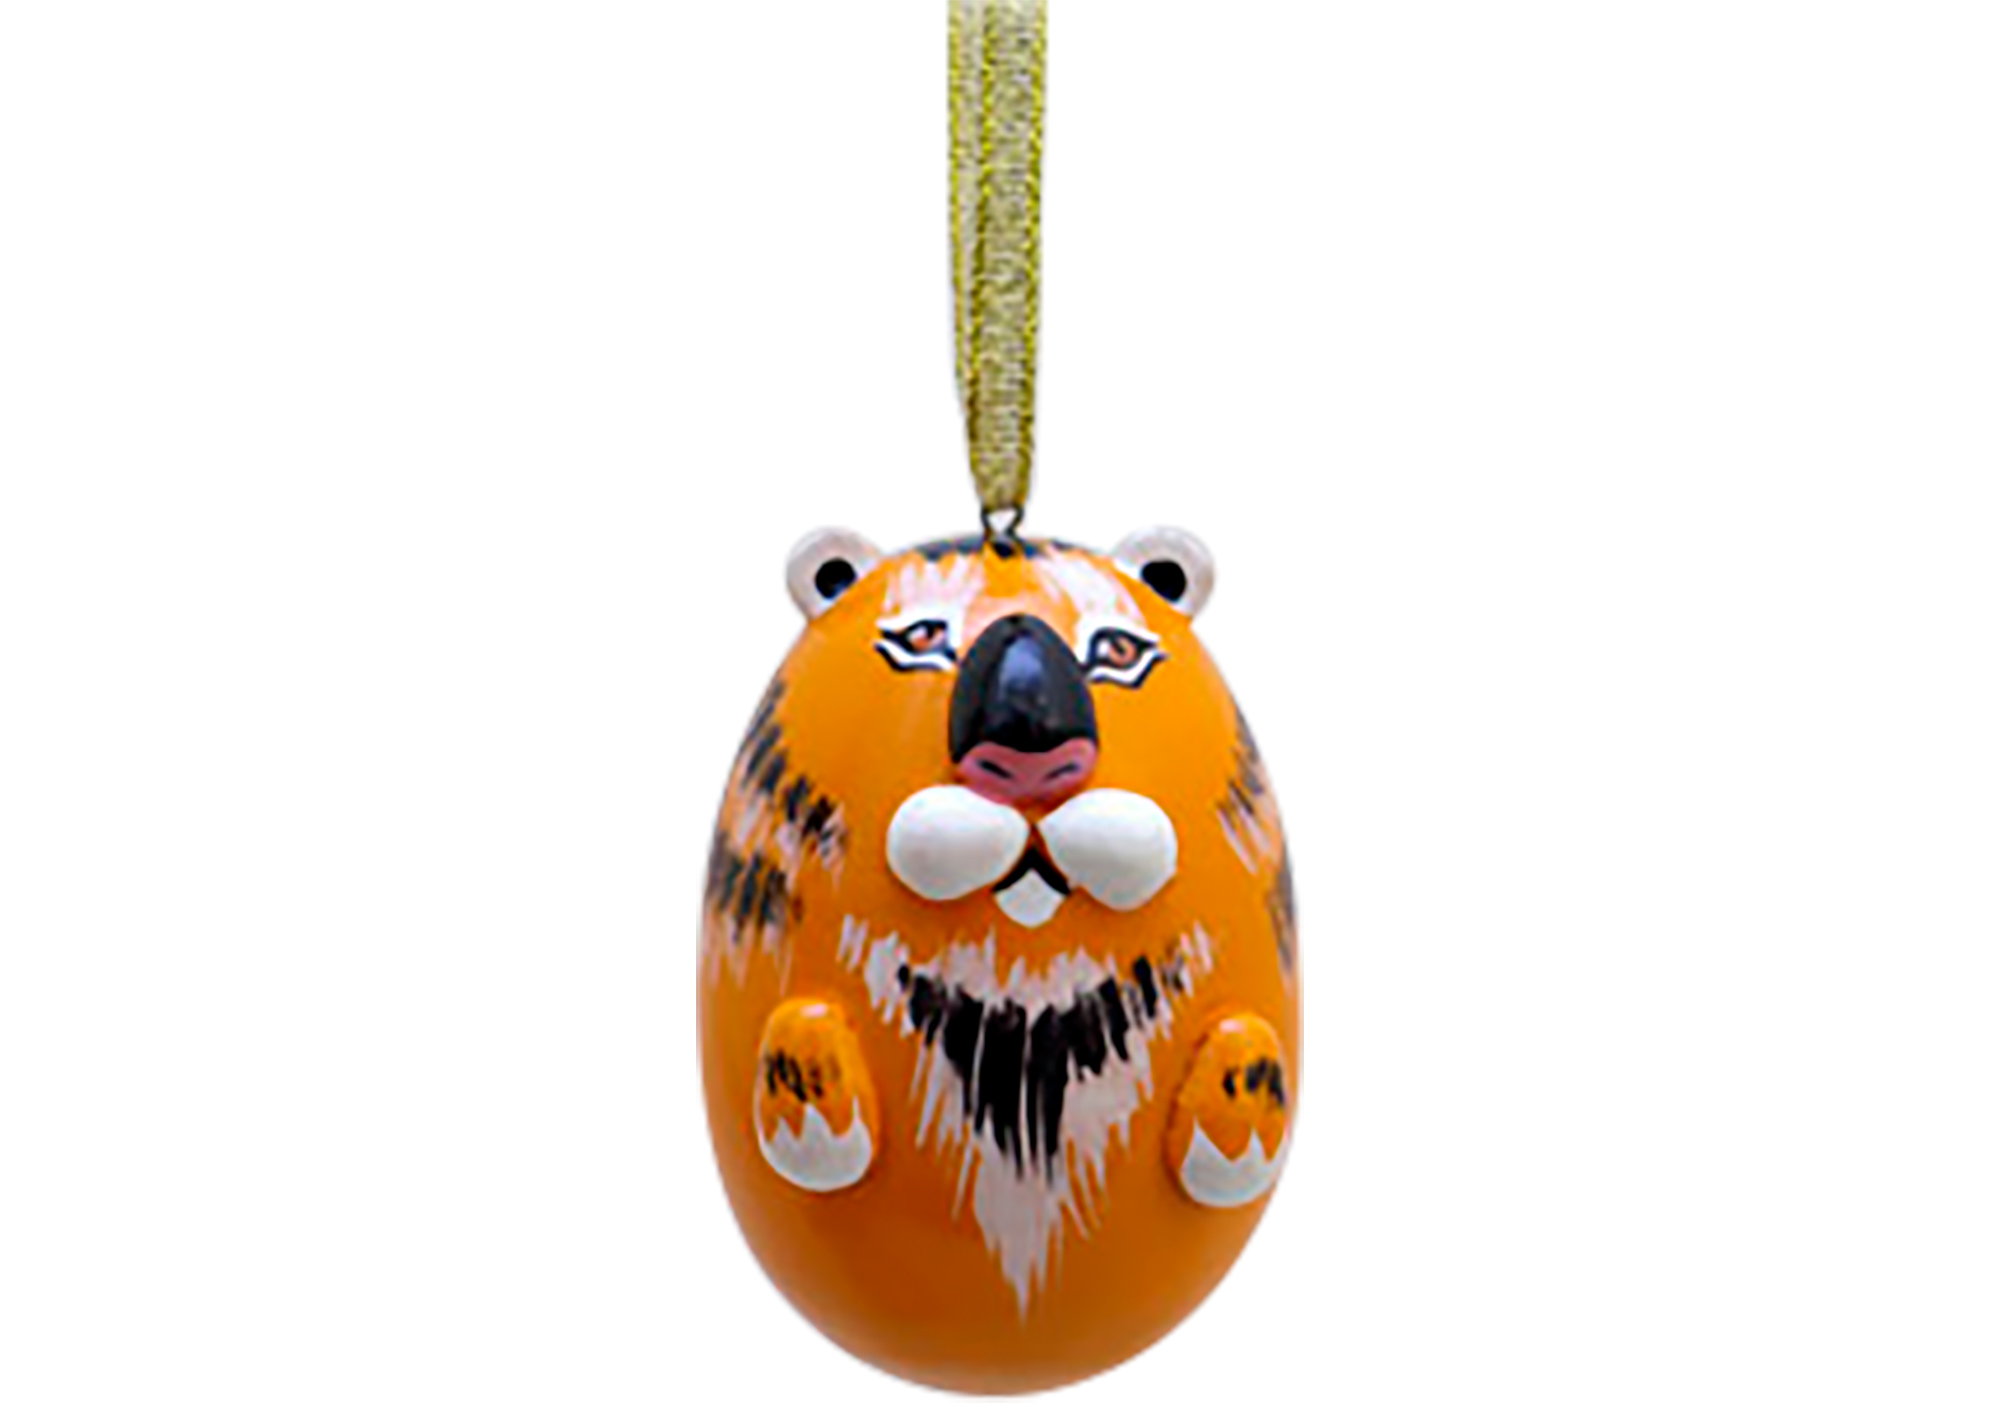 Buy Елочное украшение "Тигр" 5 см at GoldenCockerel.com